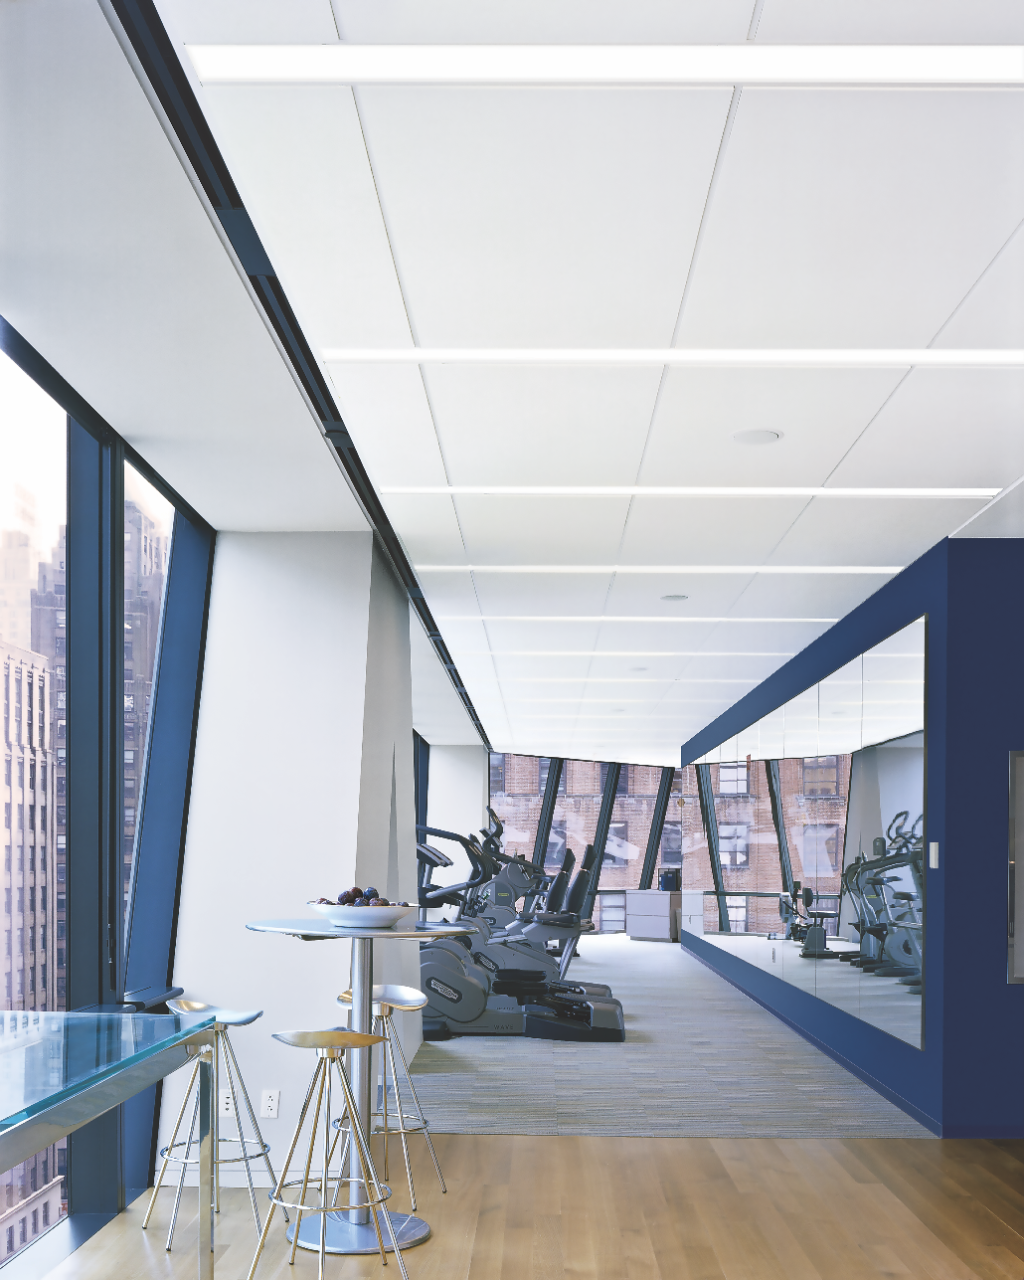 USG Halcyon™ Logix™ acoustical ceiling panels